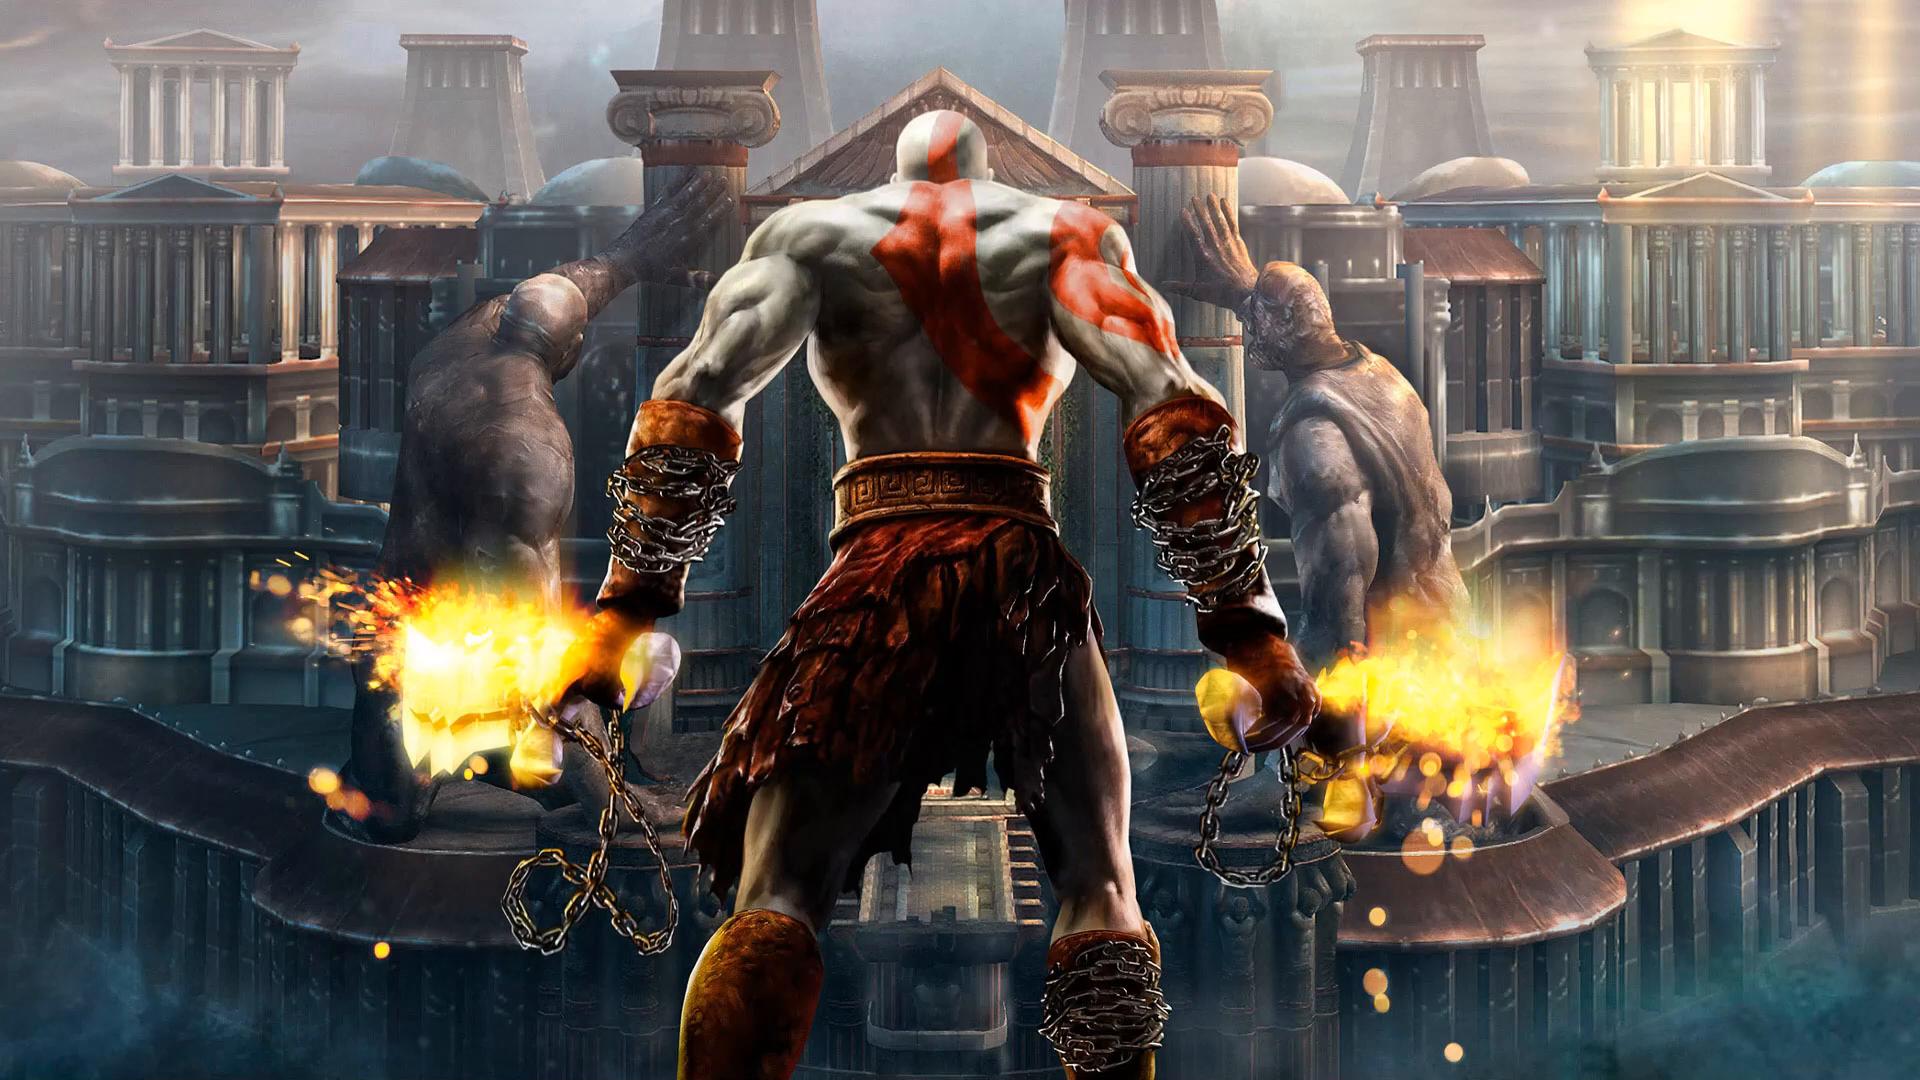 Video games eclipse God of War Kratos wallpaper  1920x1080  59251   WallpaperUP